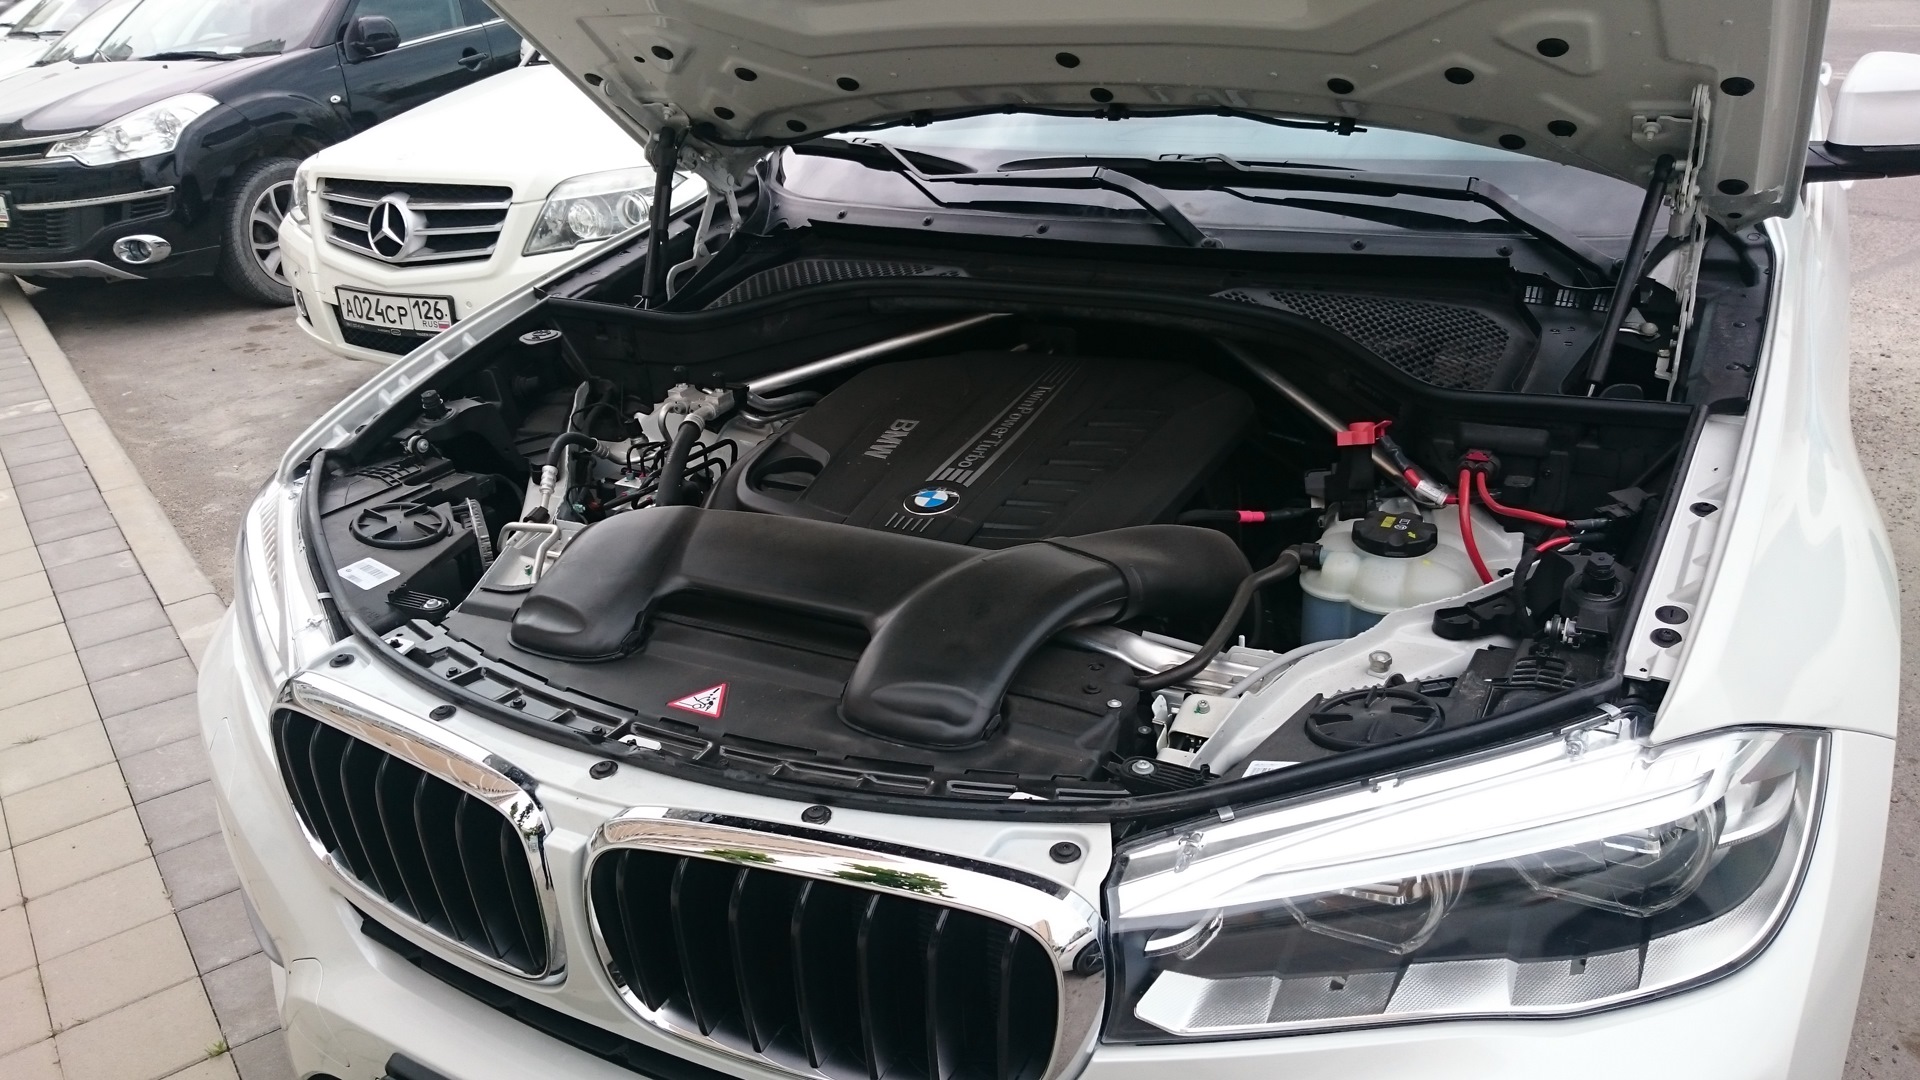 Открыть капот bmw. BMW x6 f мотор. BMW x6 f16 под капотом. Подкапотное пространство BMW x6 f16. BMW x5 g05 под капотом.